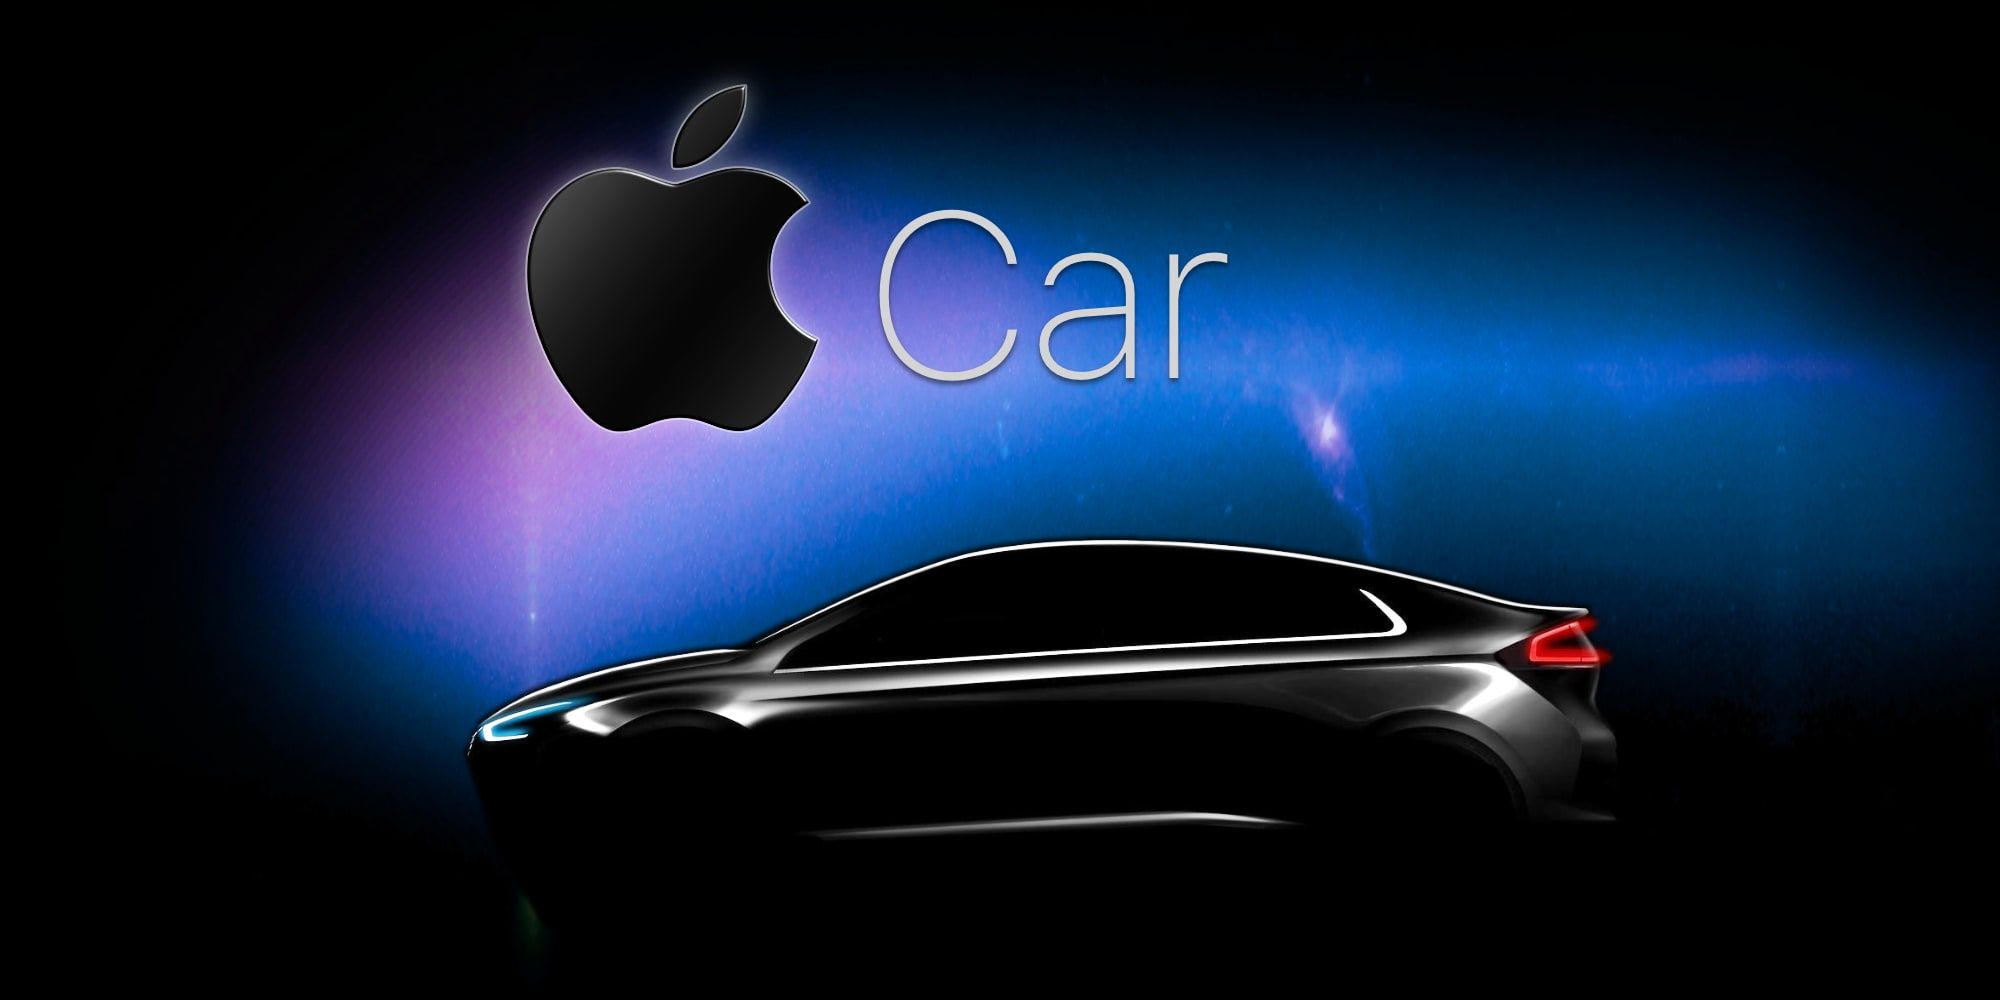 Apple Car: Early Talks, But Is Hyundai A Good Partner Choice?